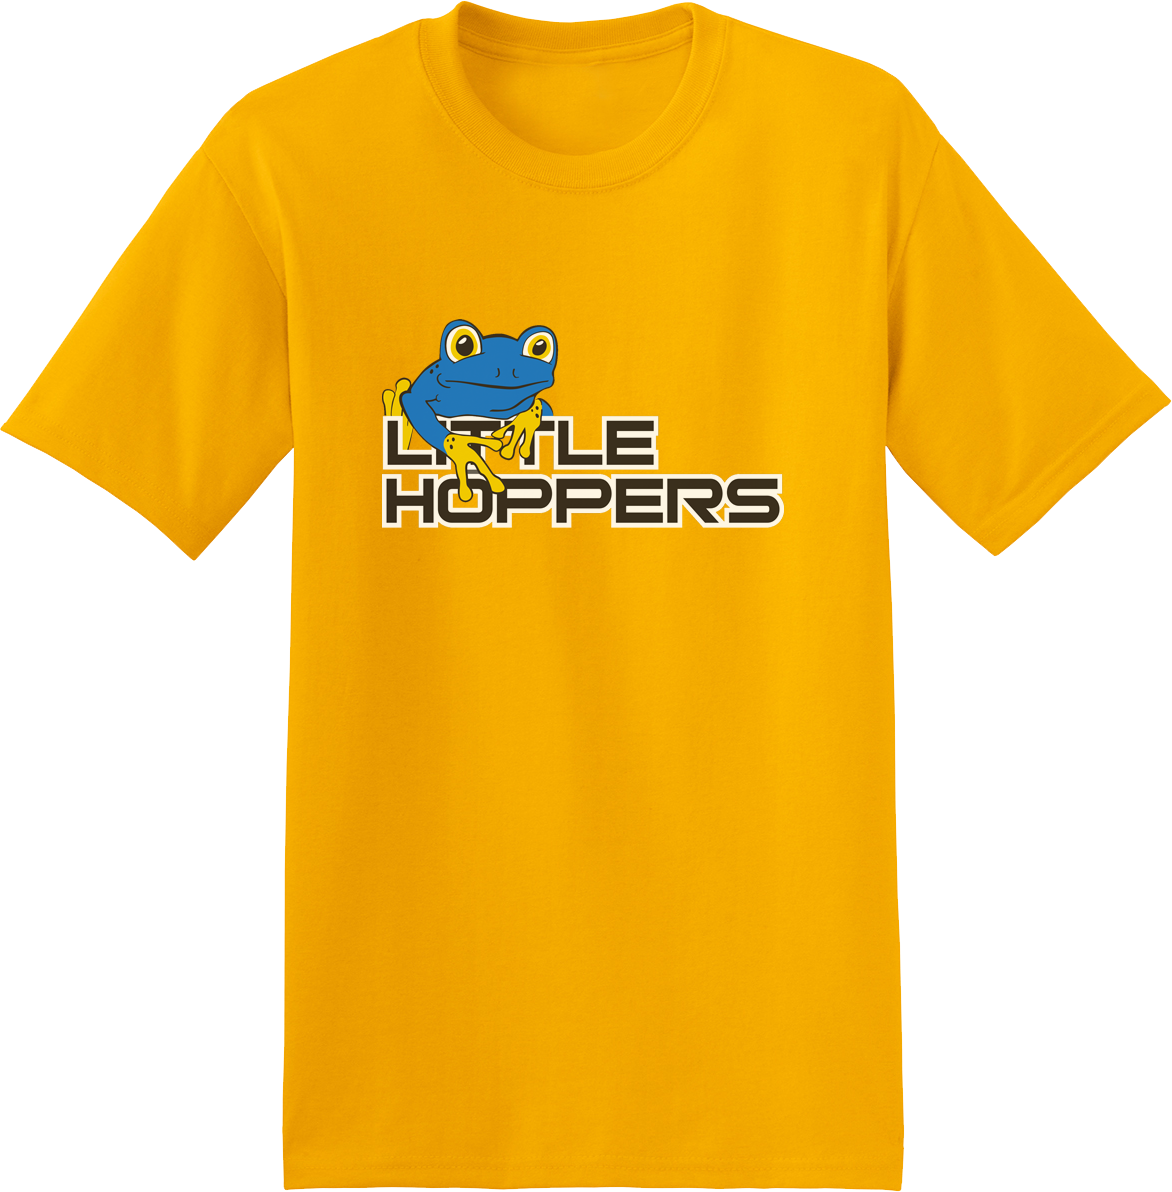 Little Hoppers Gold T-Shirt